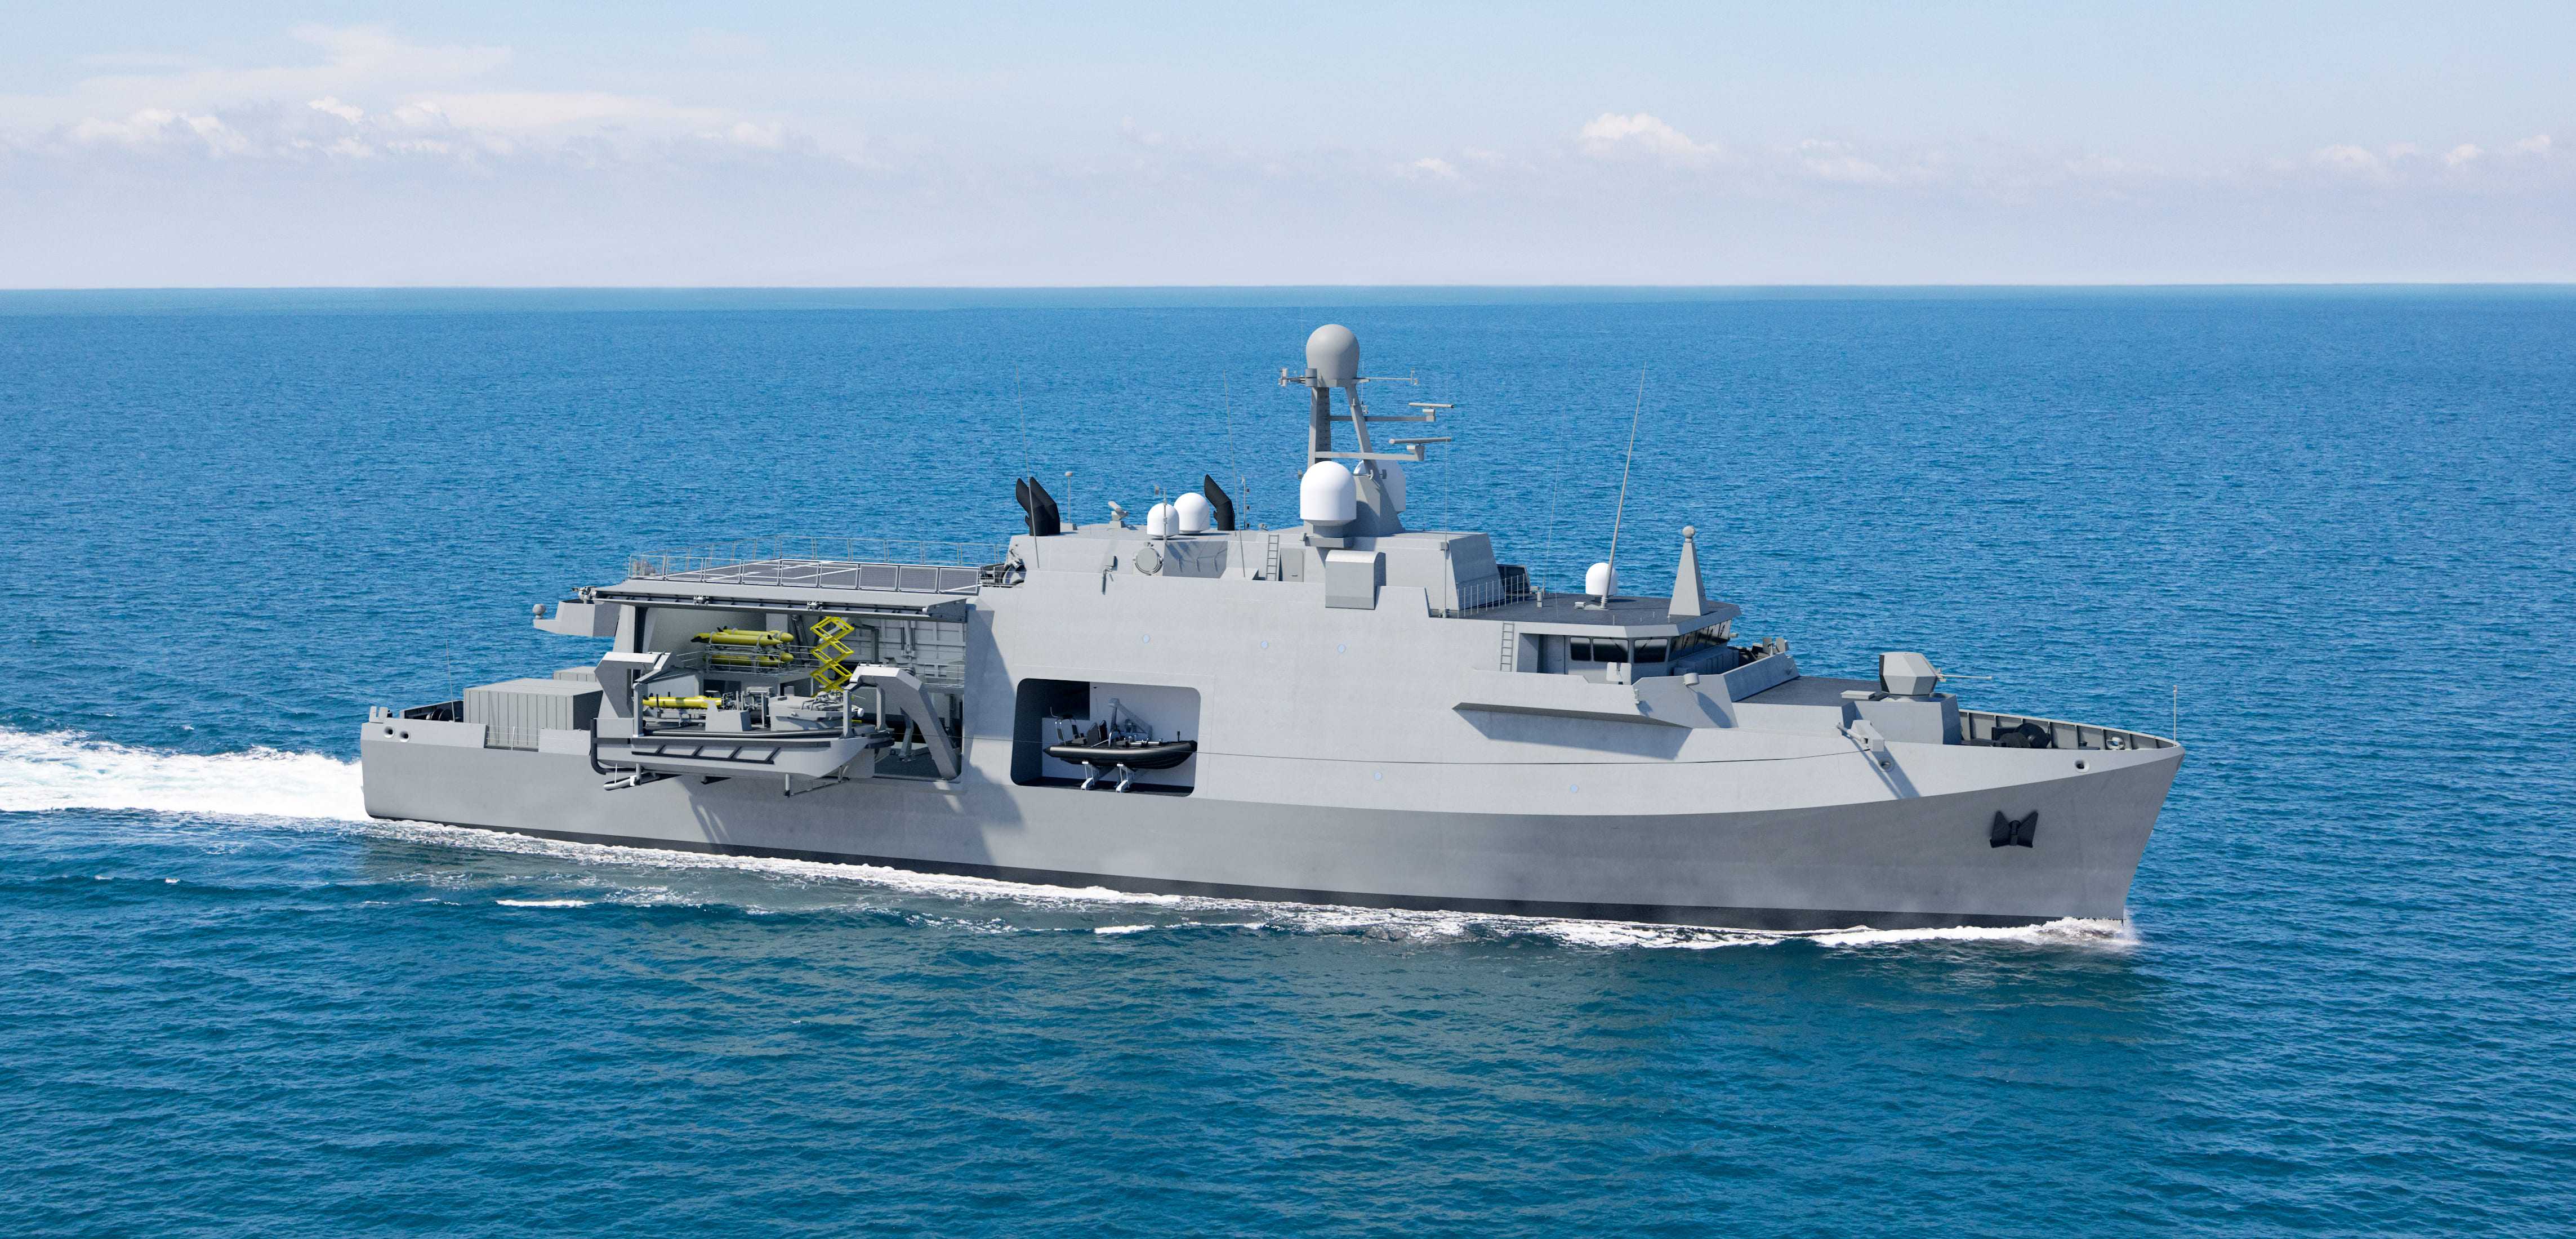 Европейцы заложили головной противоминный корабль М 940 Oostende, разработанного по программе Mine Counter Measures